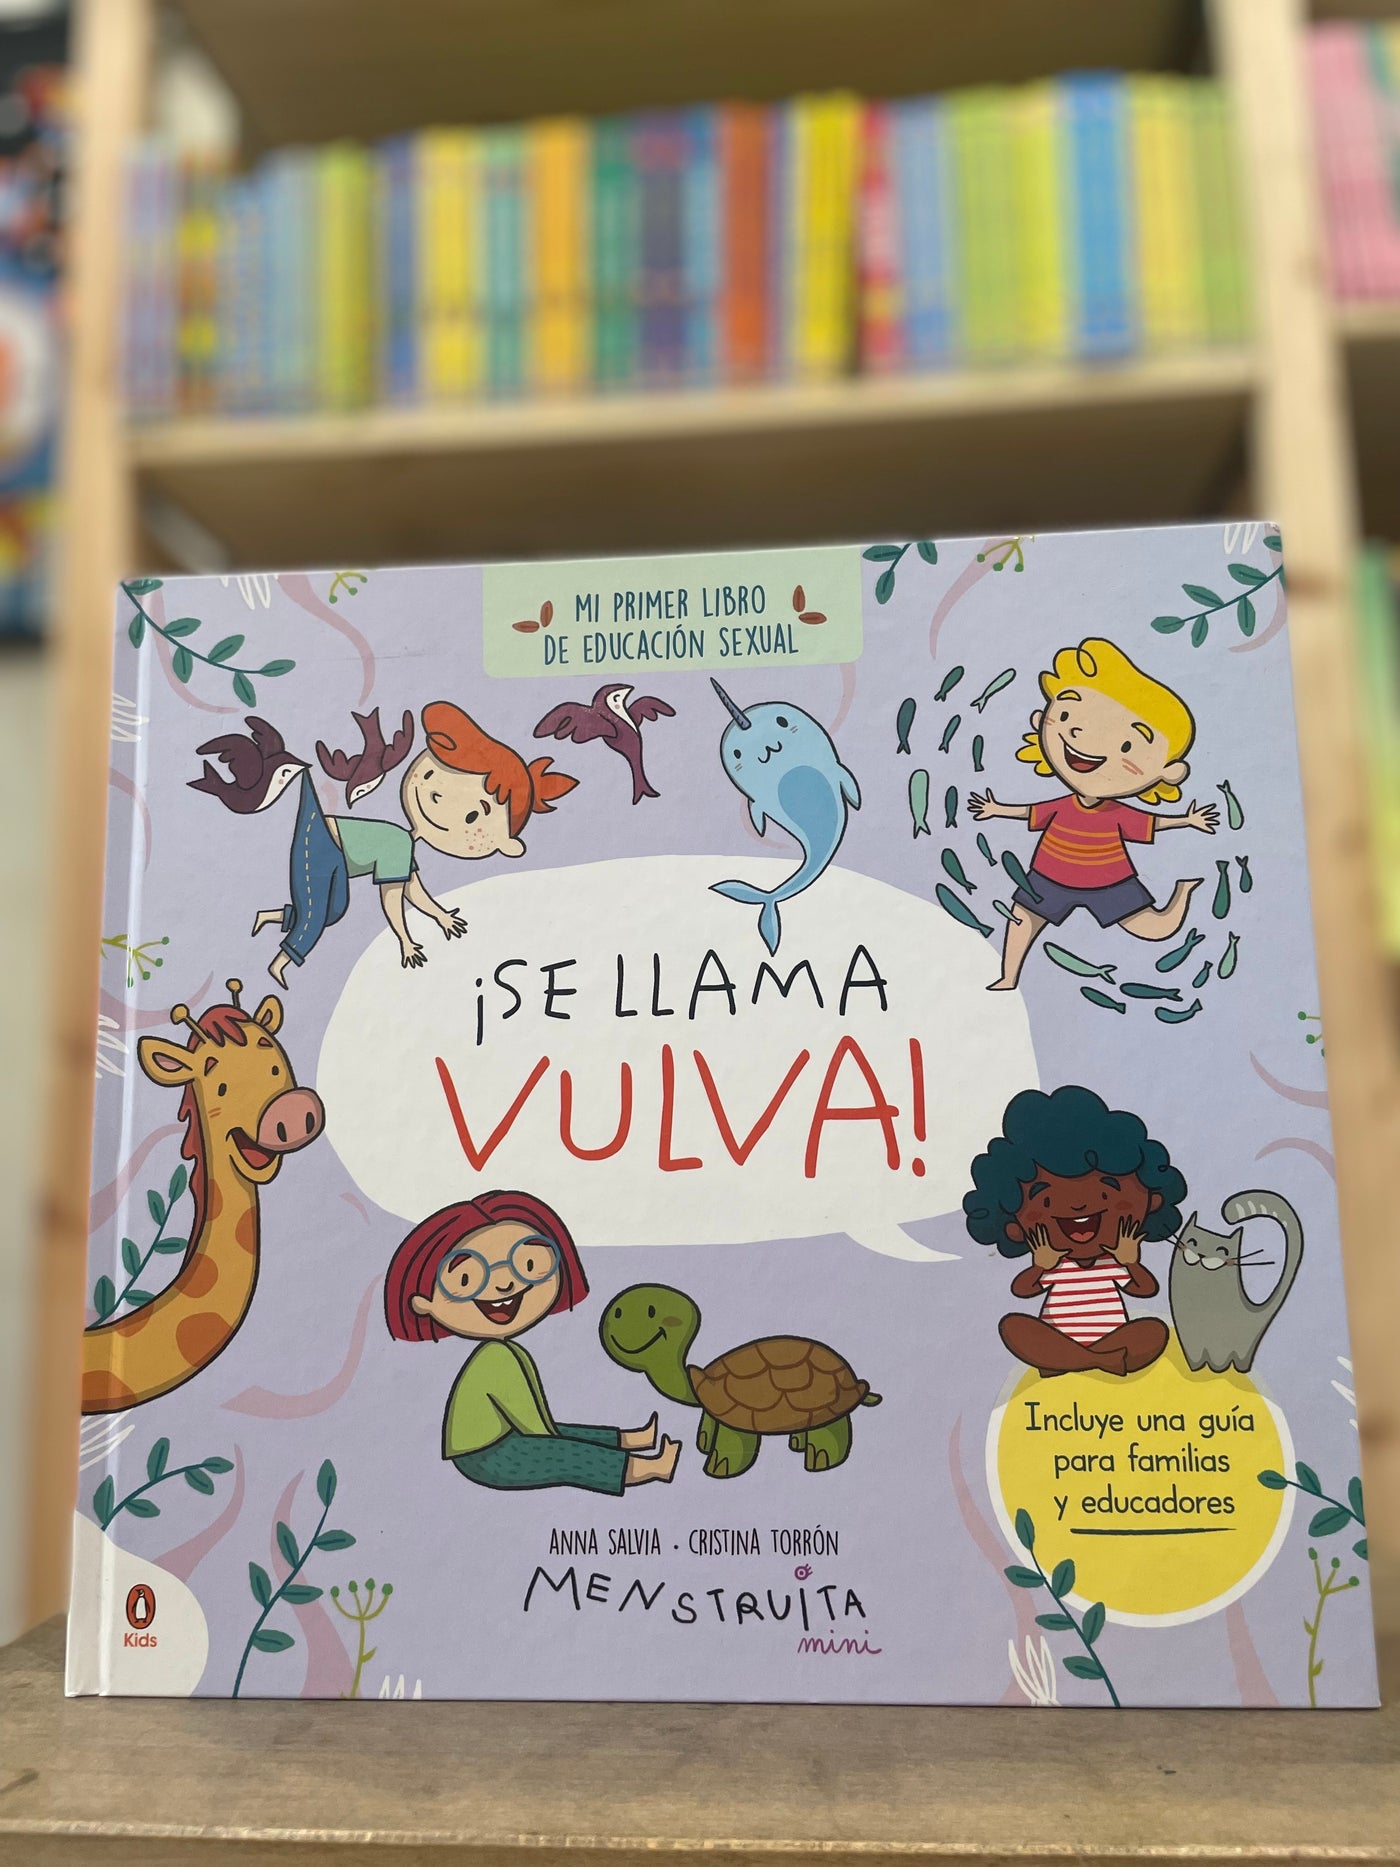 Se llama vulva - Mi primer libro de educación sexual